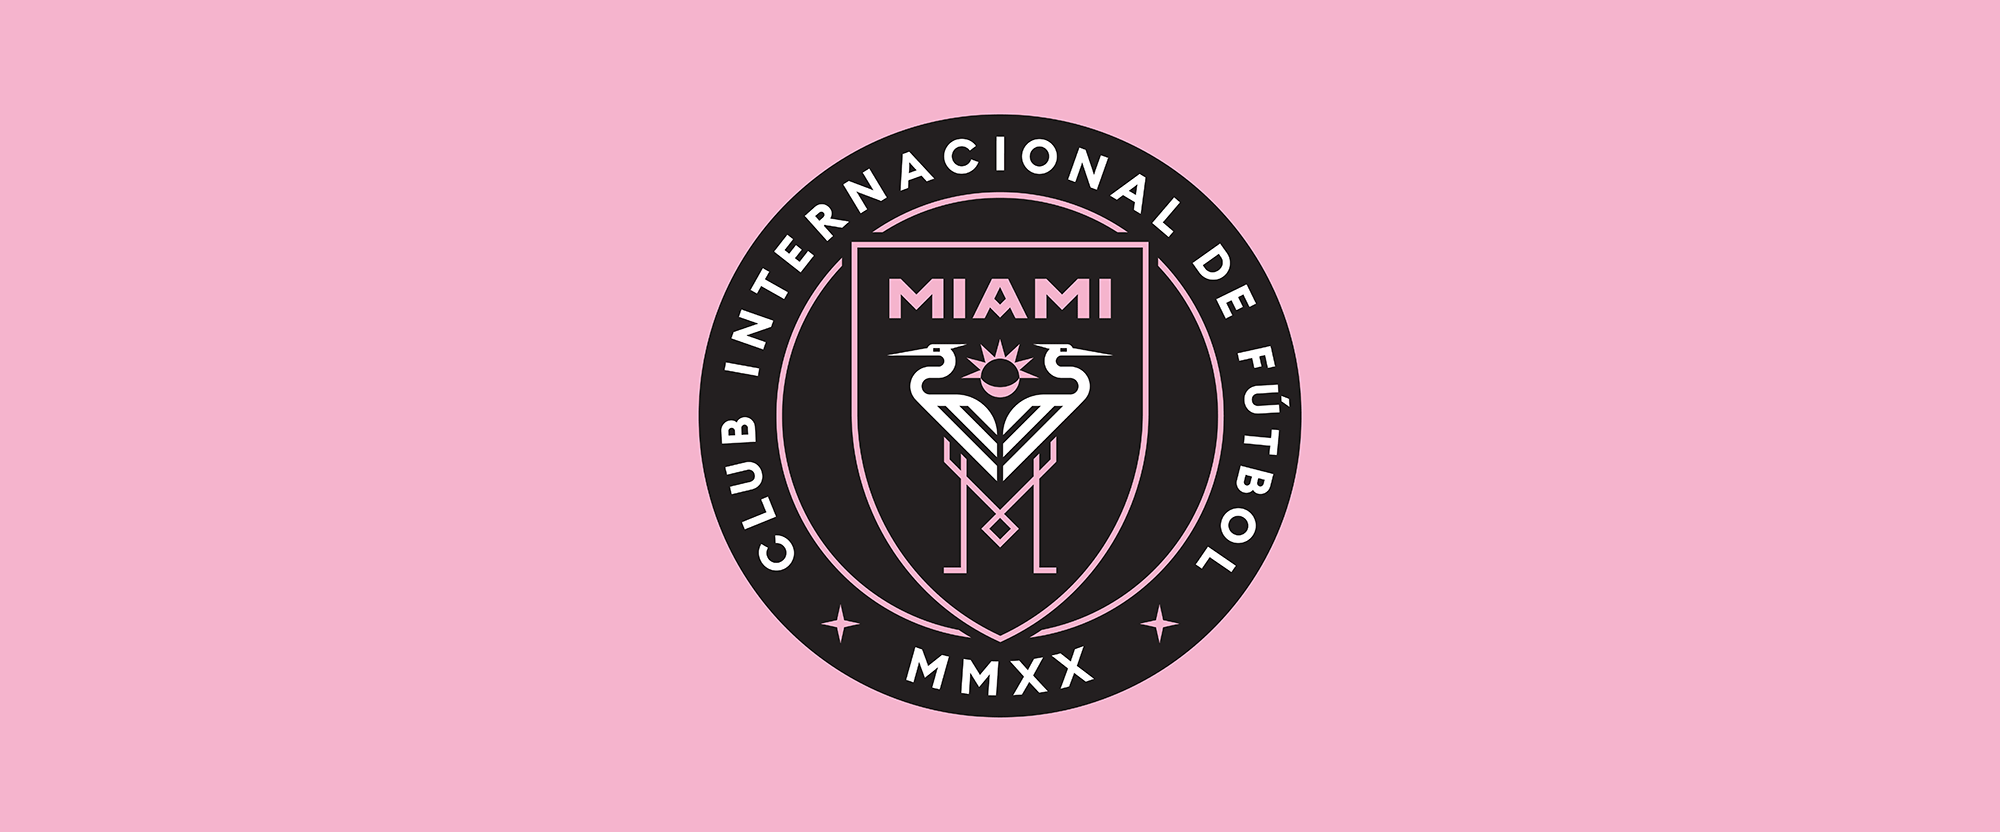 Brand New: New Logo for Club Internacional de Fútbol Miami by Doubleday &  Cartwright